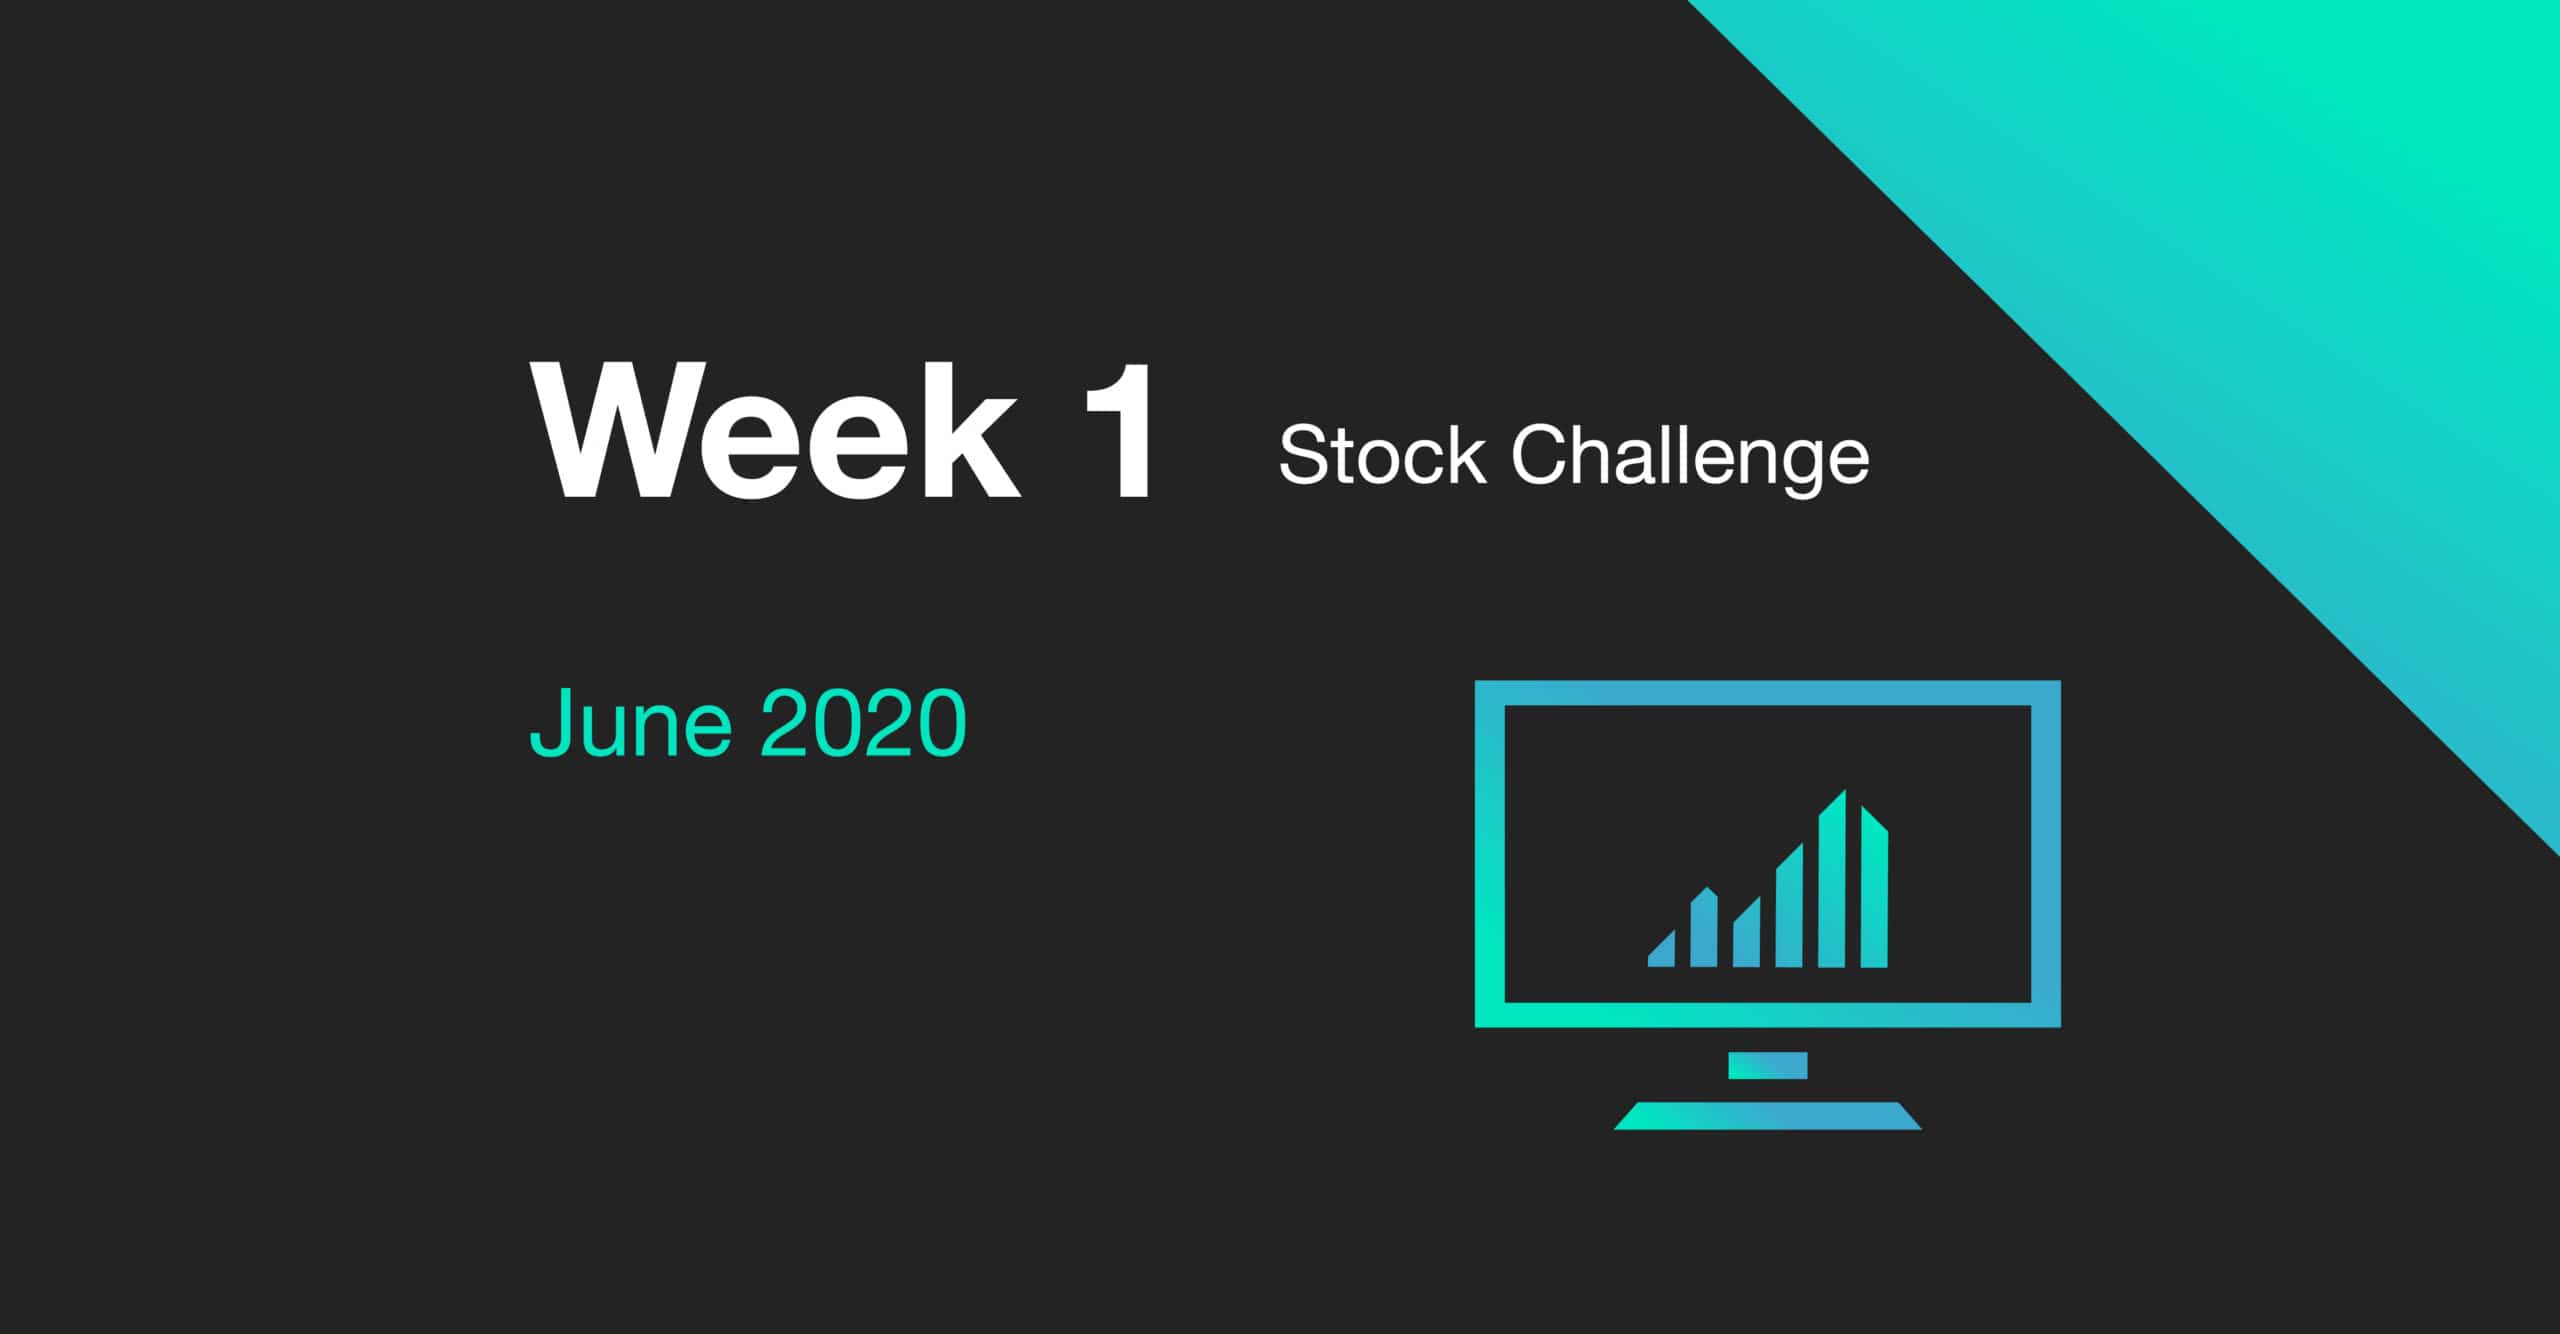 Week 1 of the June 2020 Stock Challenge